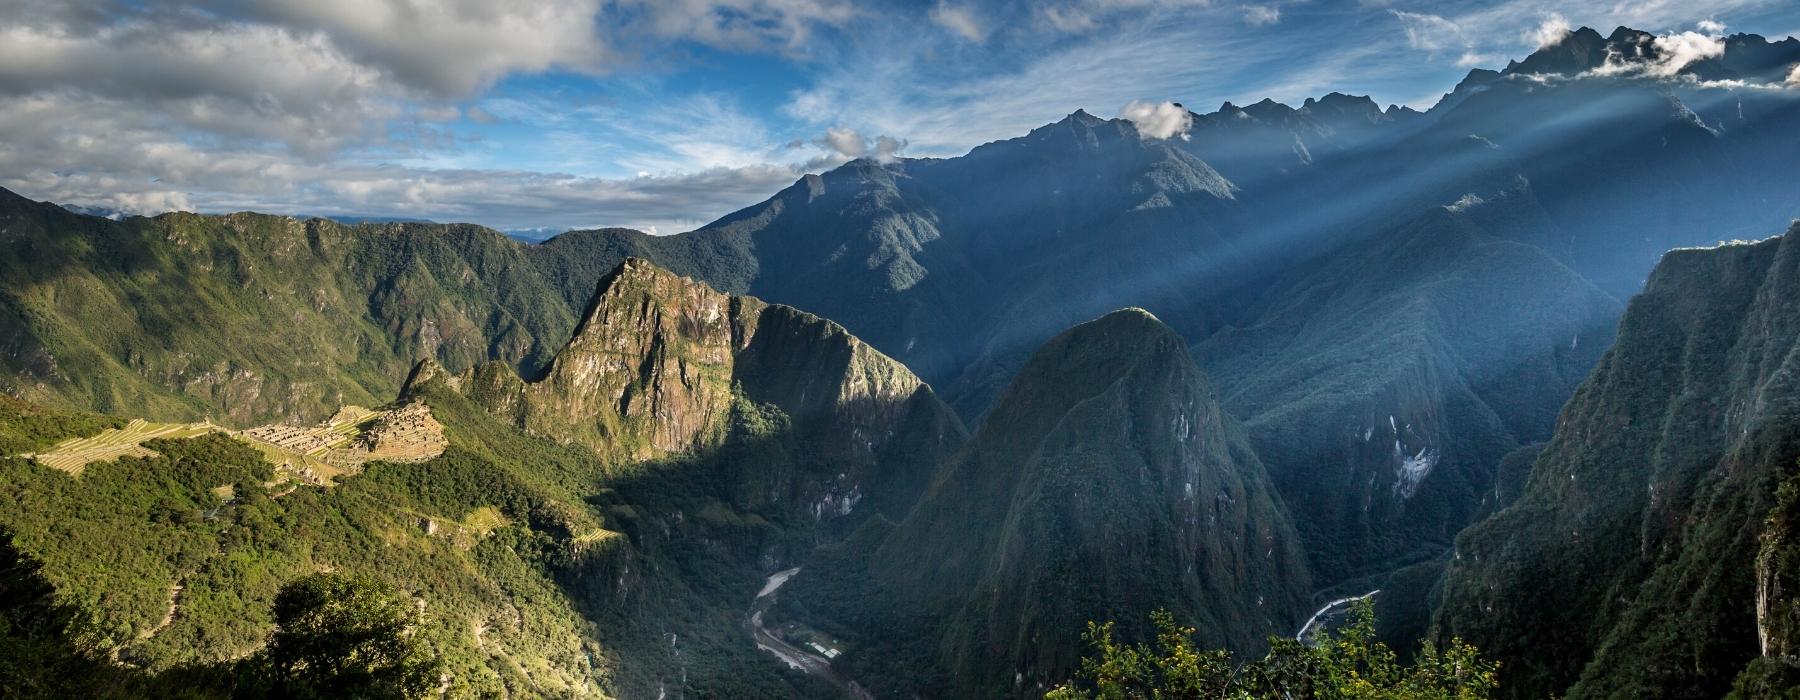 Escalada y una obsesión: el “clásico” con Los Andes - Política del Sur